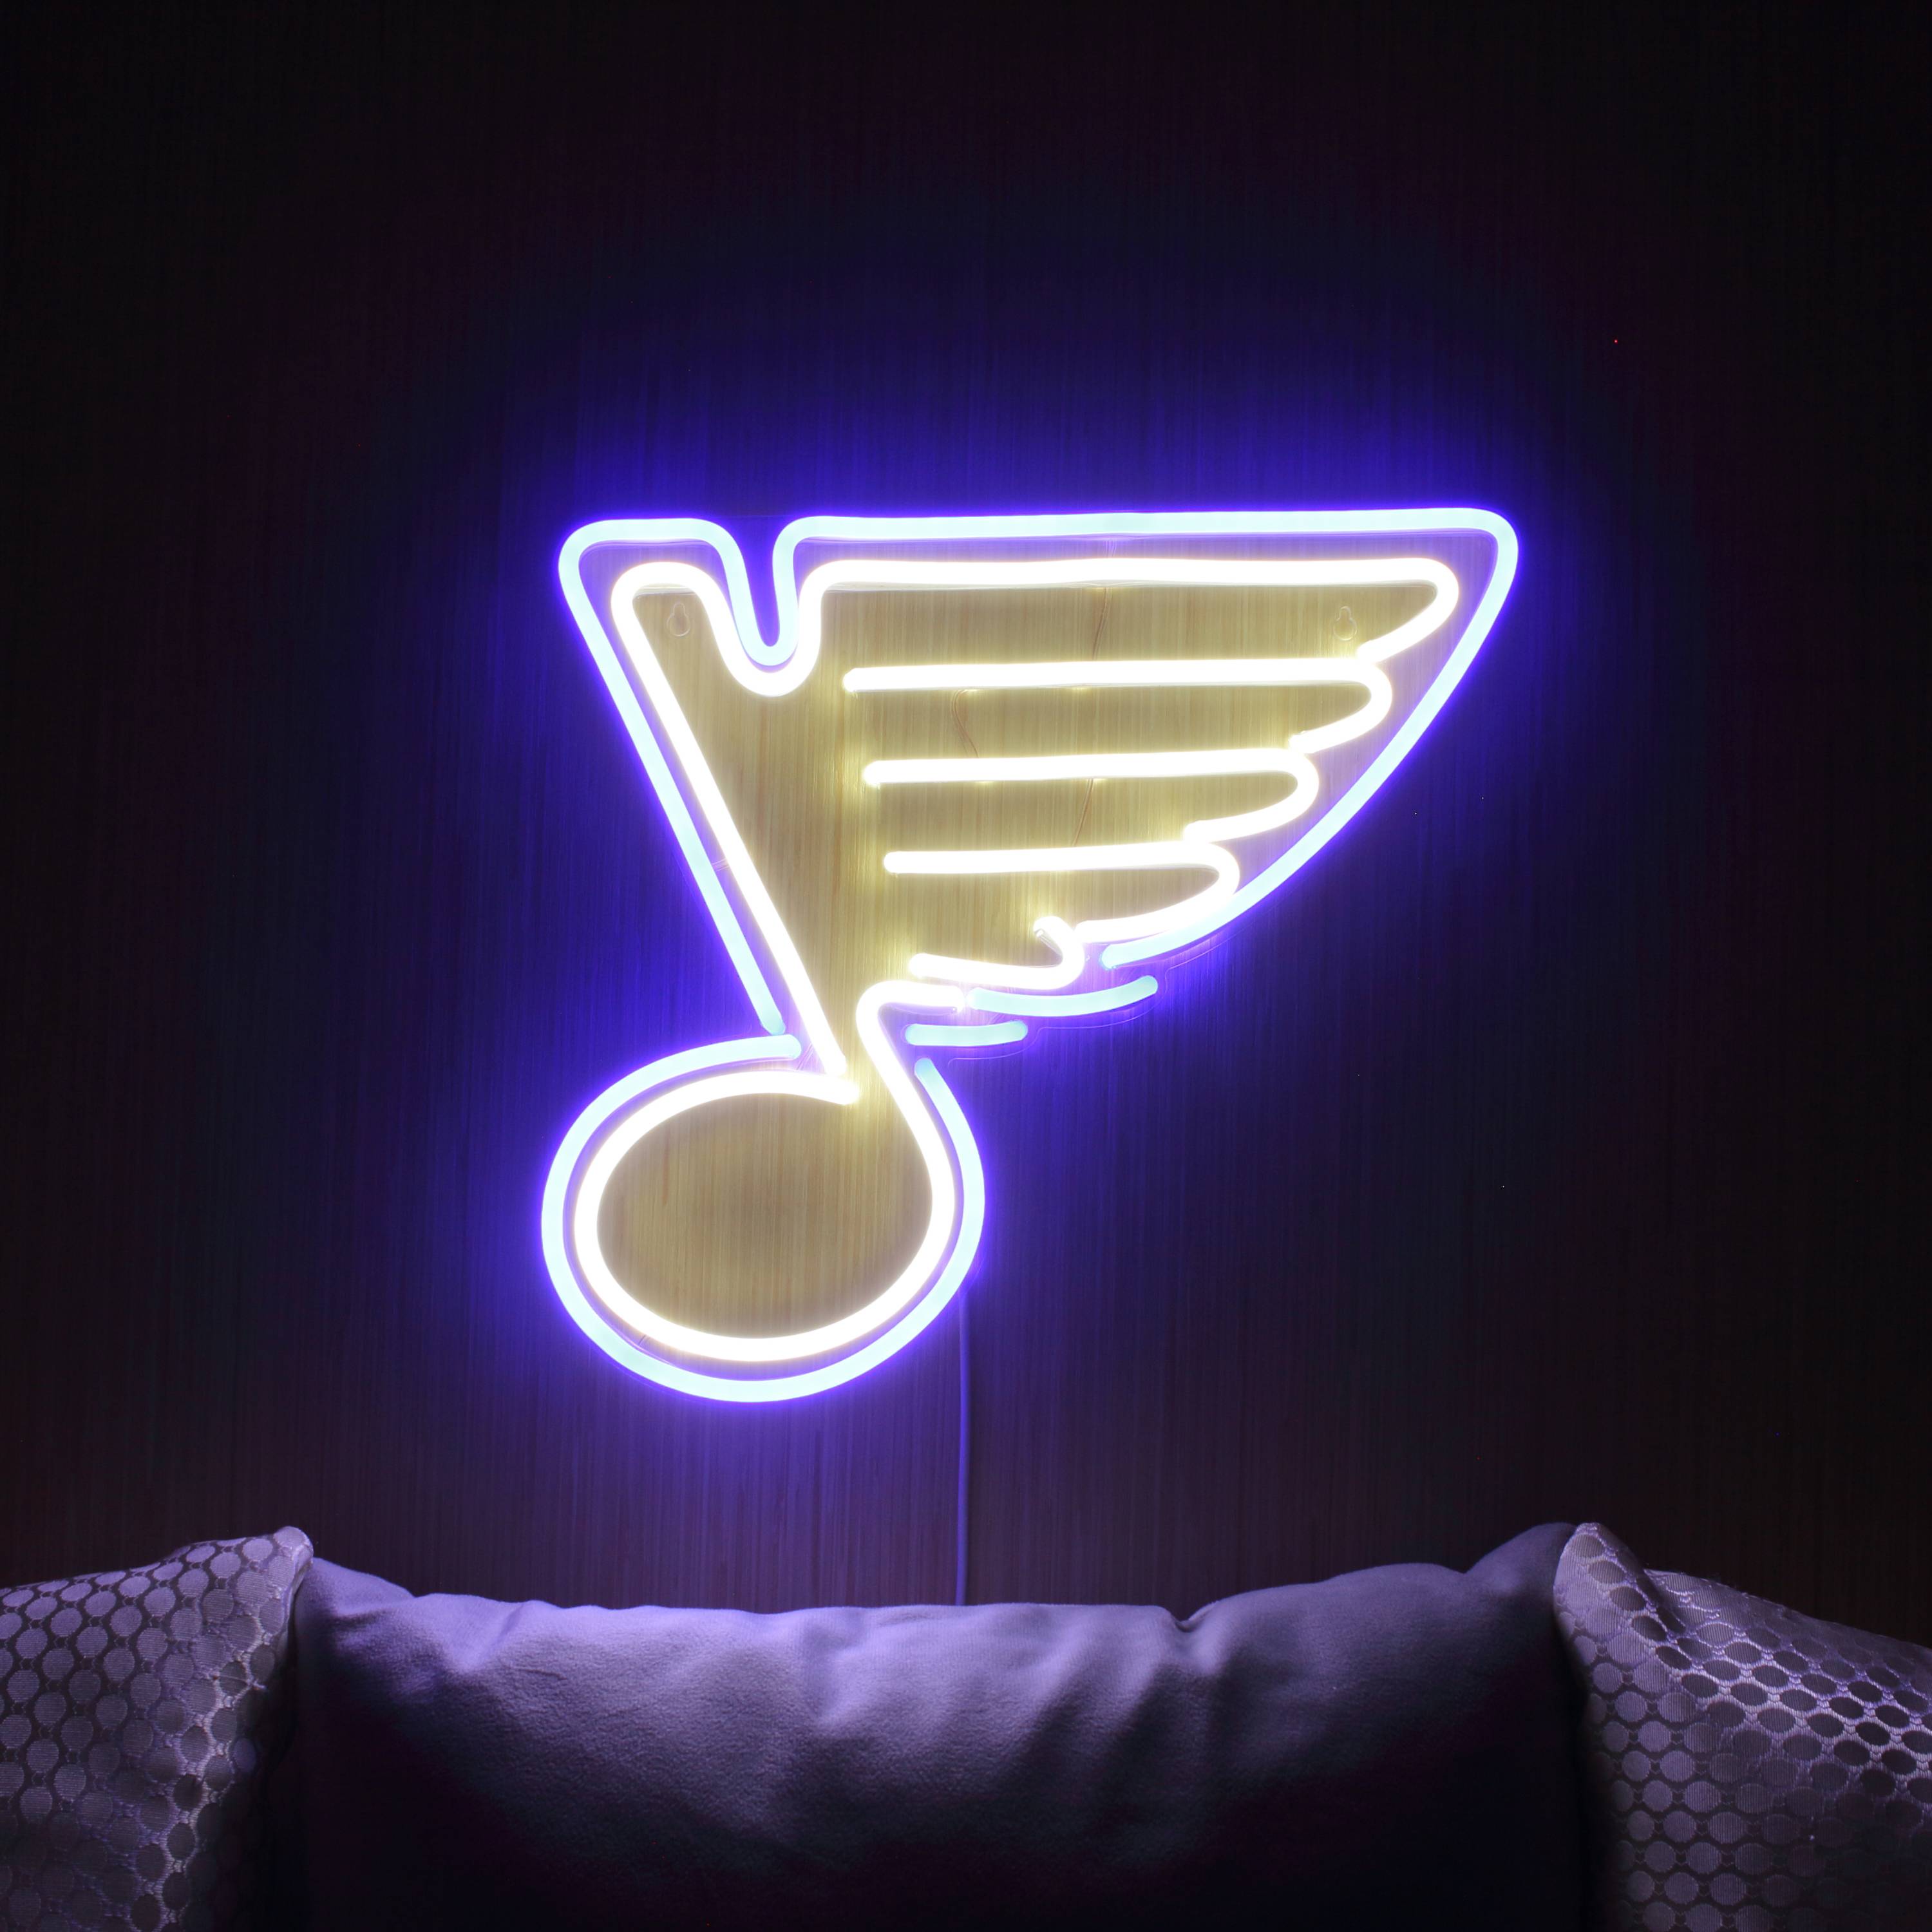 NHL St. Louis Blues Large Flex Neon LED Sign